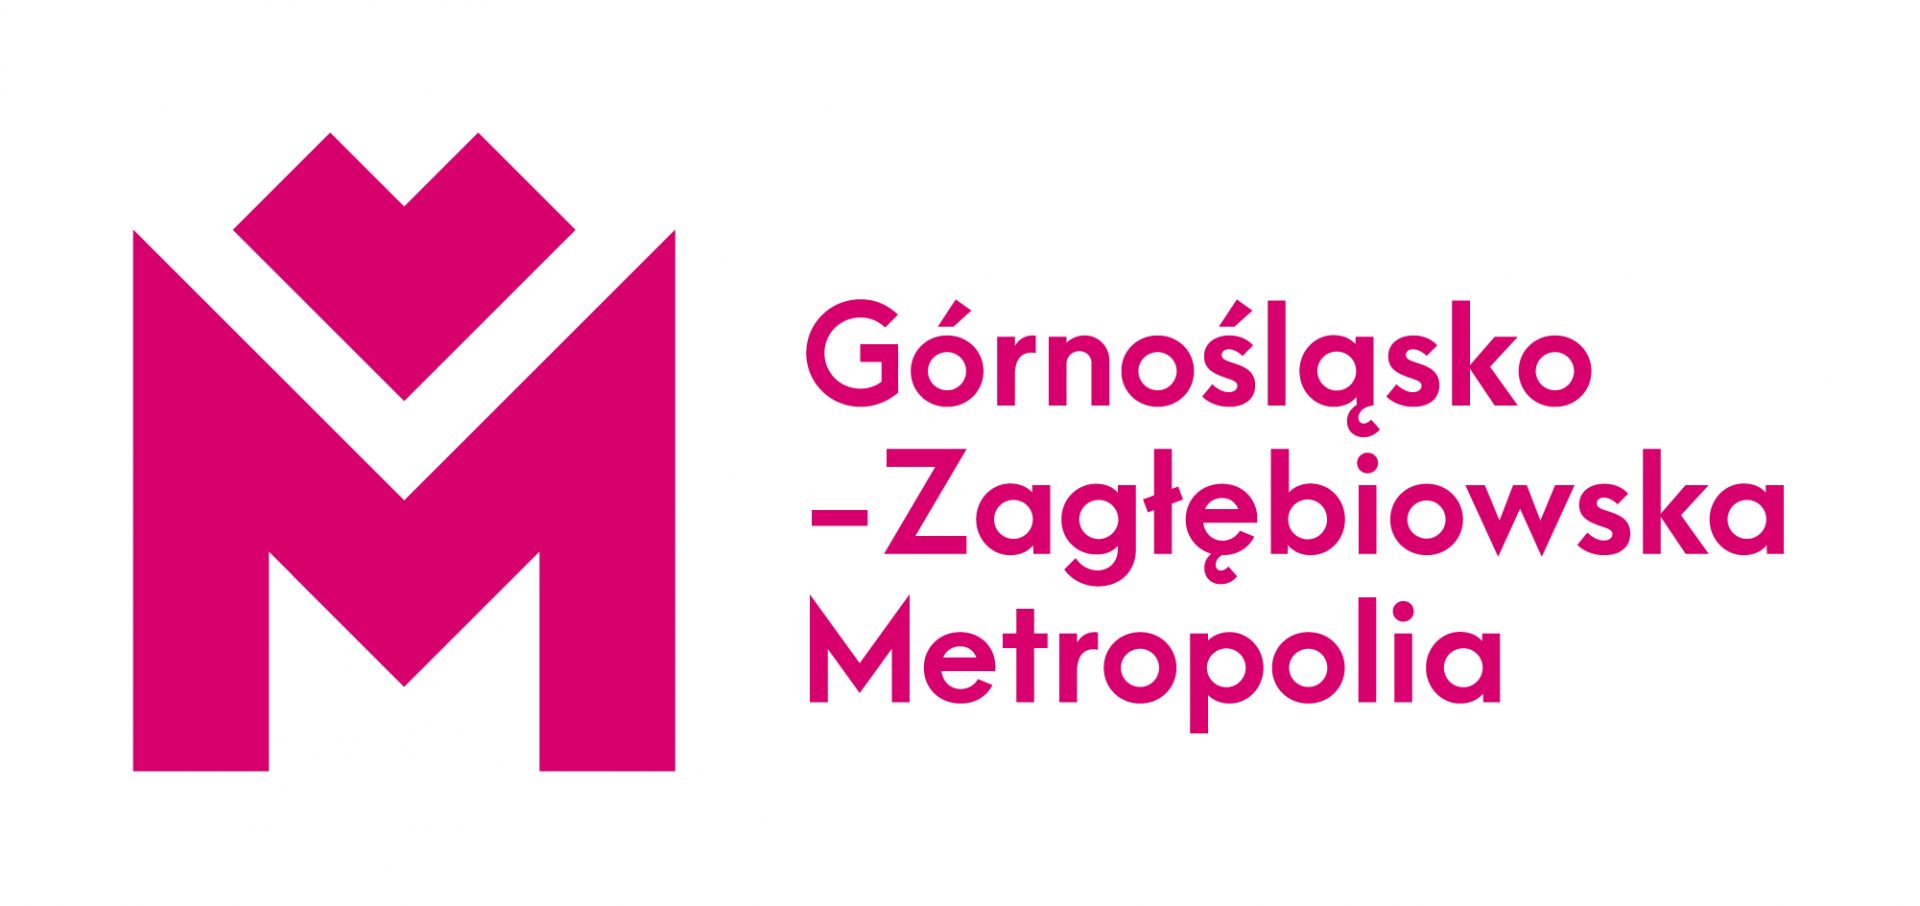 Inwestycja została dofinansowana z Górnośląsko-Zagłębiowskiej Metropolii